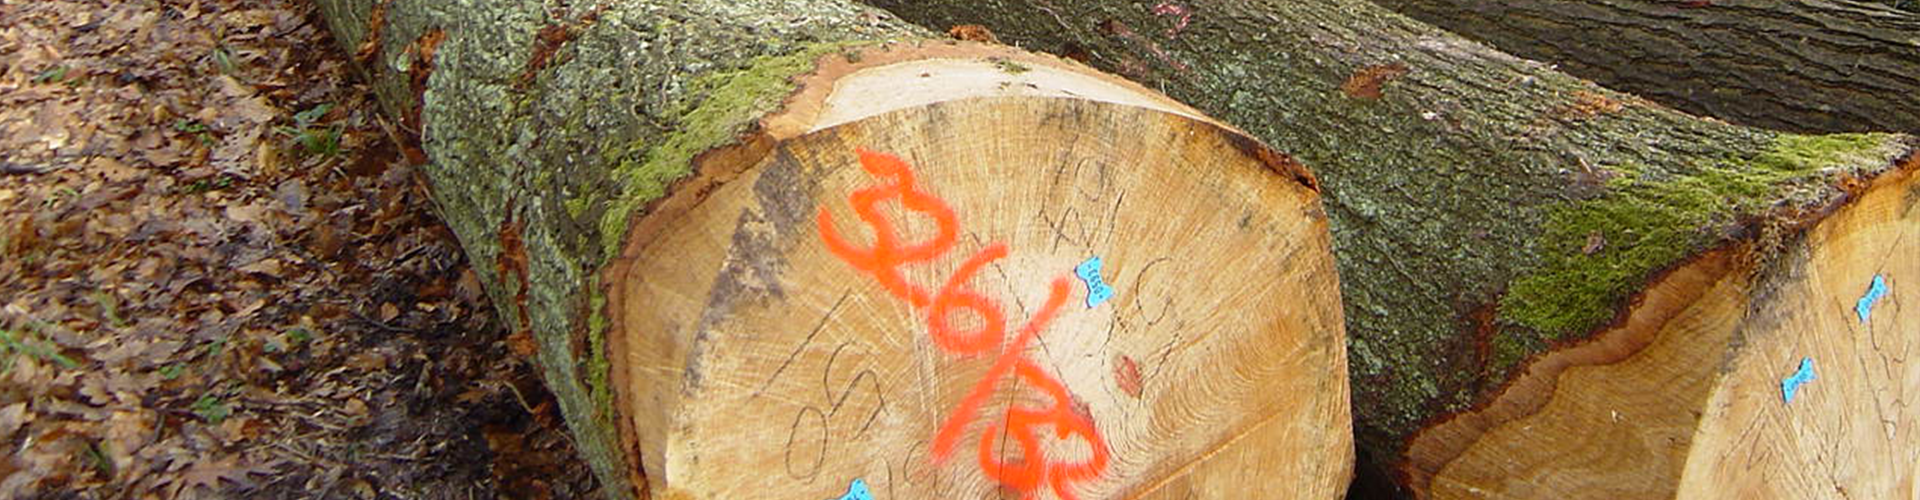 Nella foto si possono vedere tronchi d'albero di alberi decidui